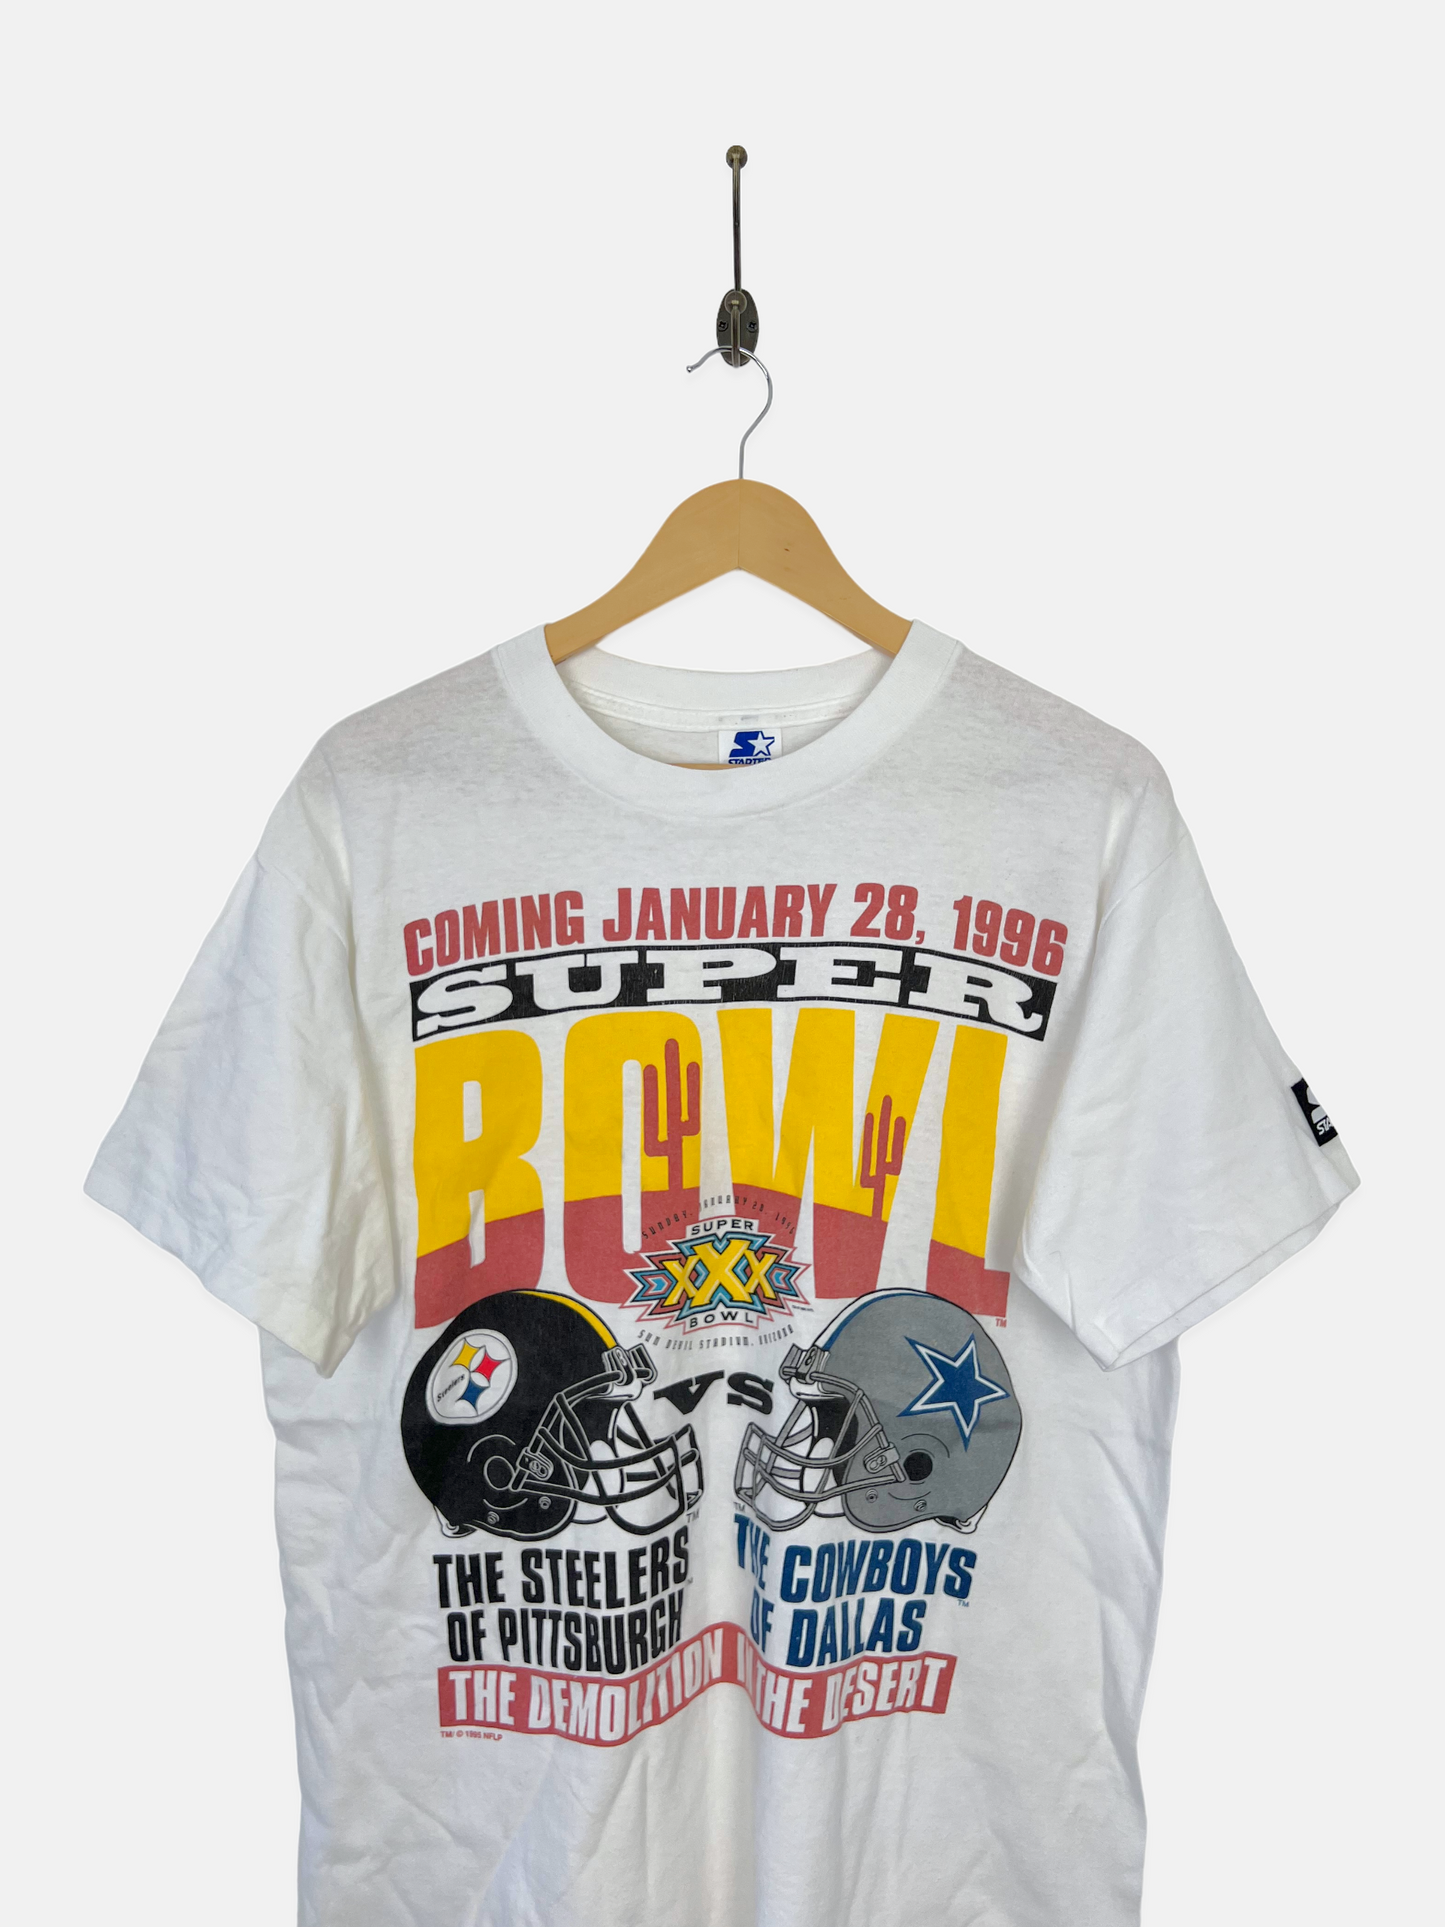 1996 Steelers vs Cowboys NFL Starter USA Made Vintage T-Shirt Size M-L